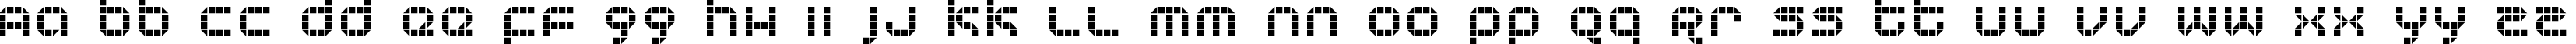 Пример написания английского алфавита шрифтом KB Tranceform